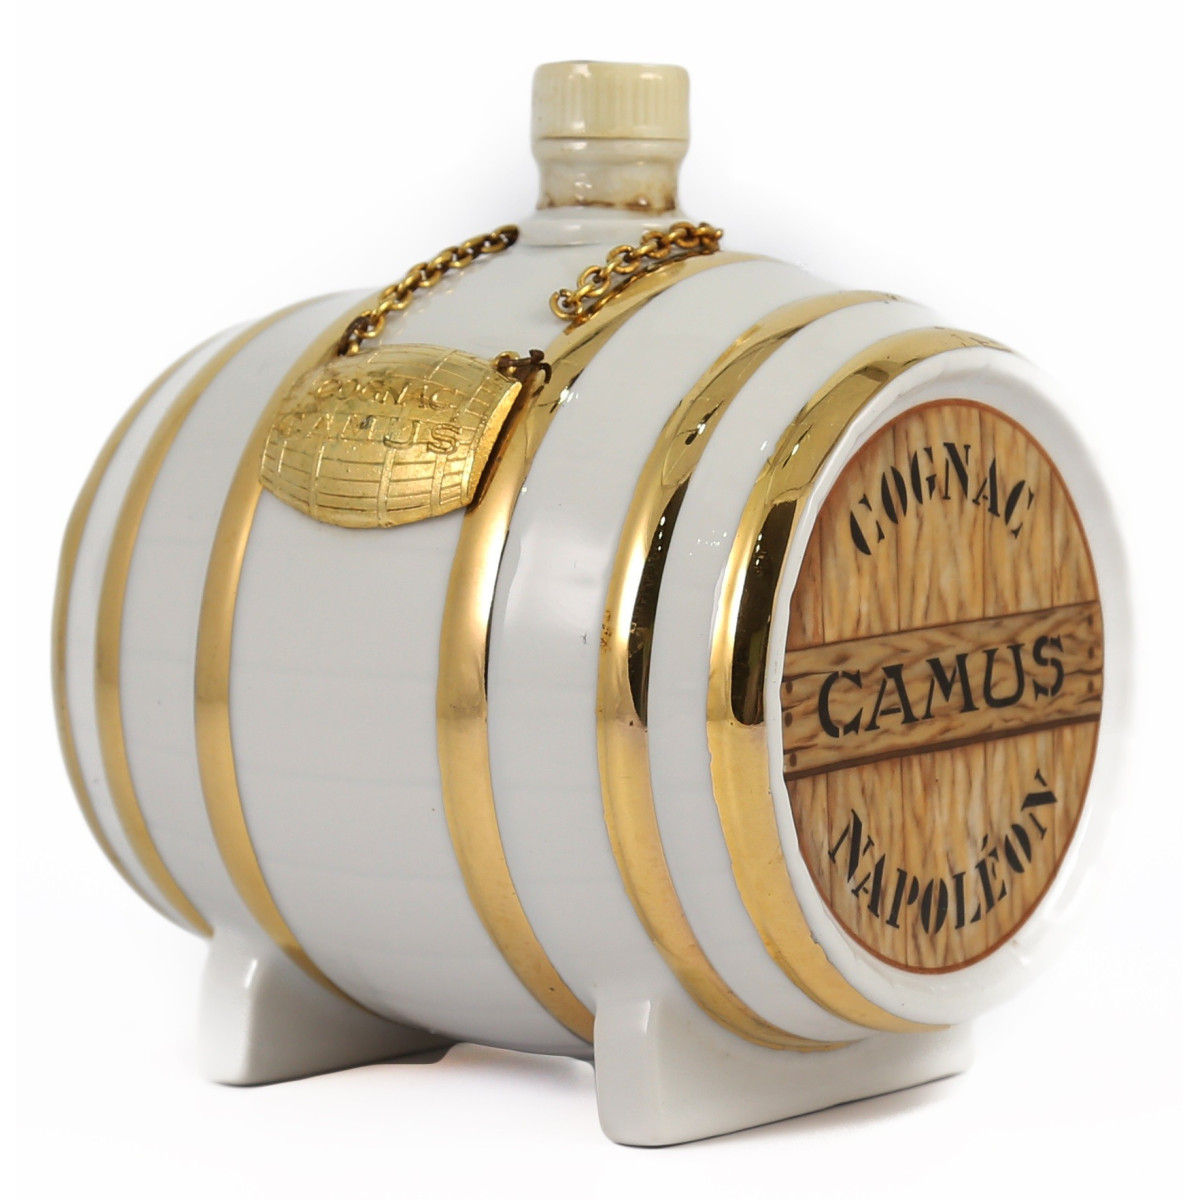 Camus Cognac Napoléon porcelain barrel 1970's